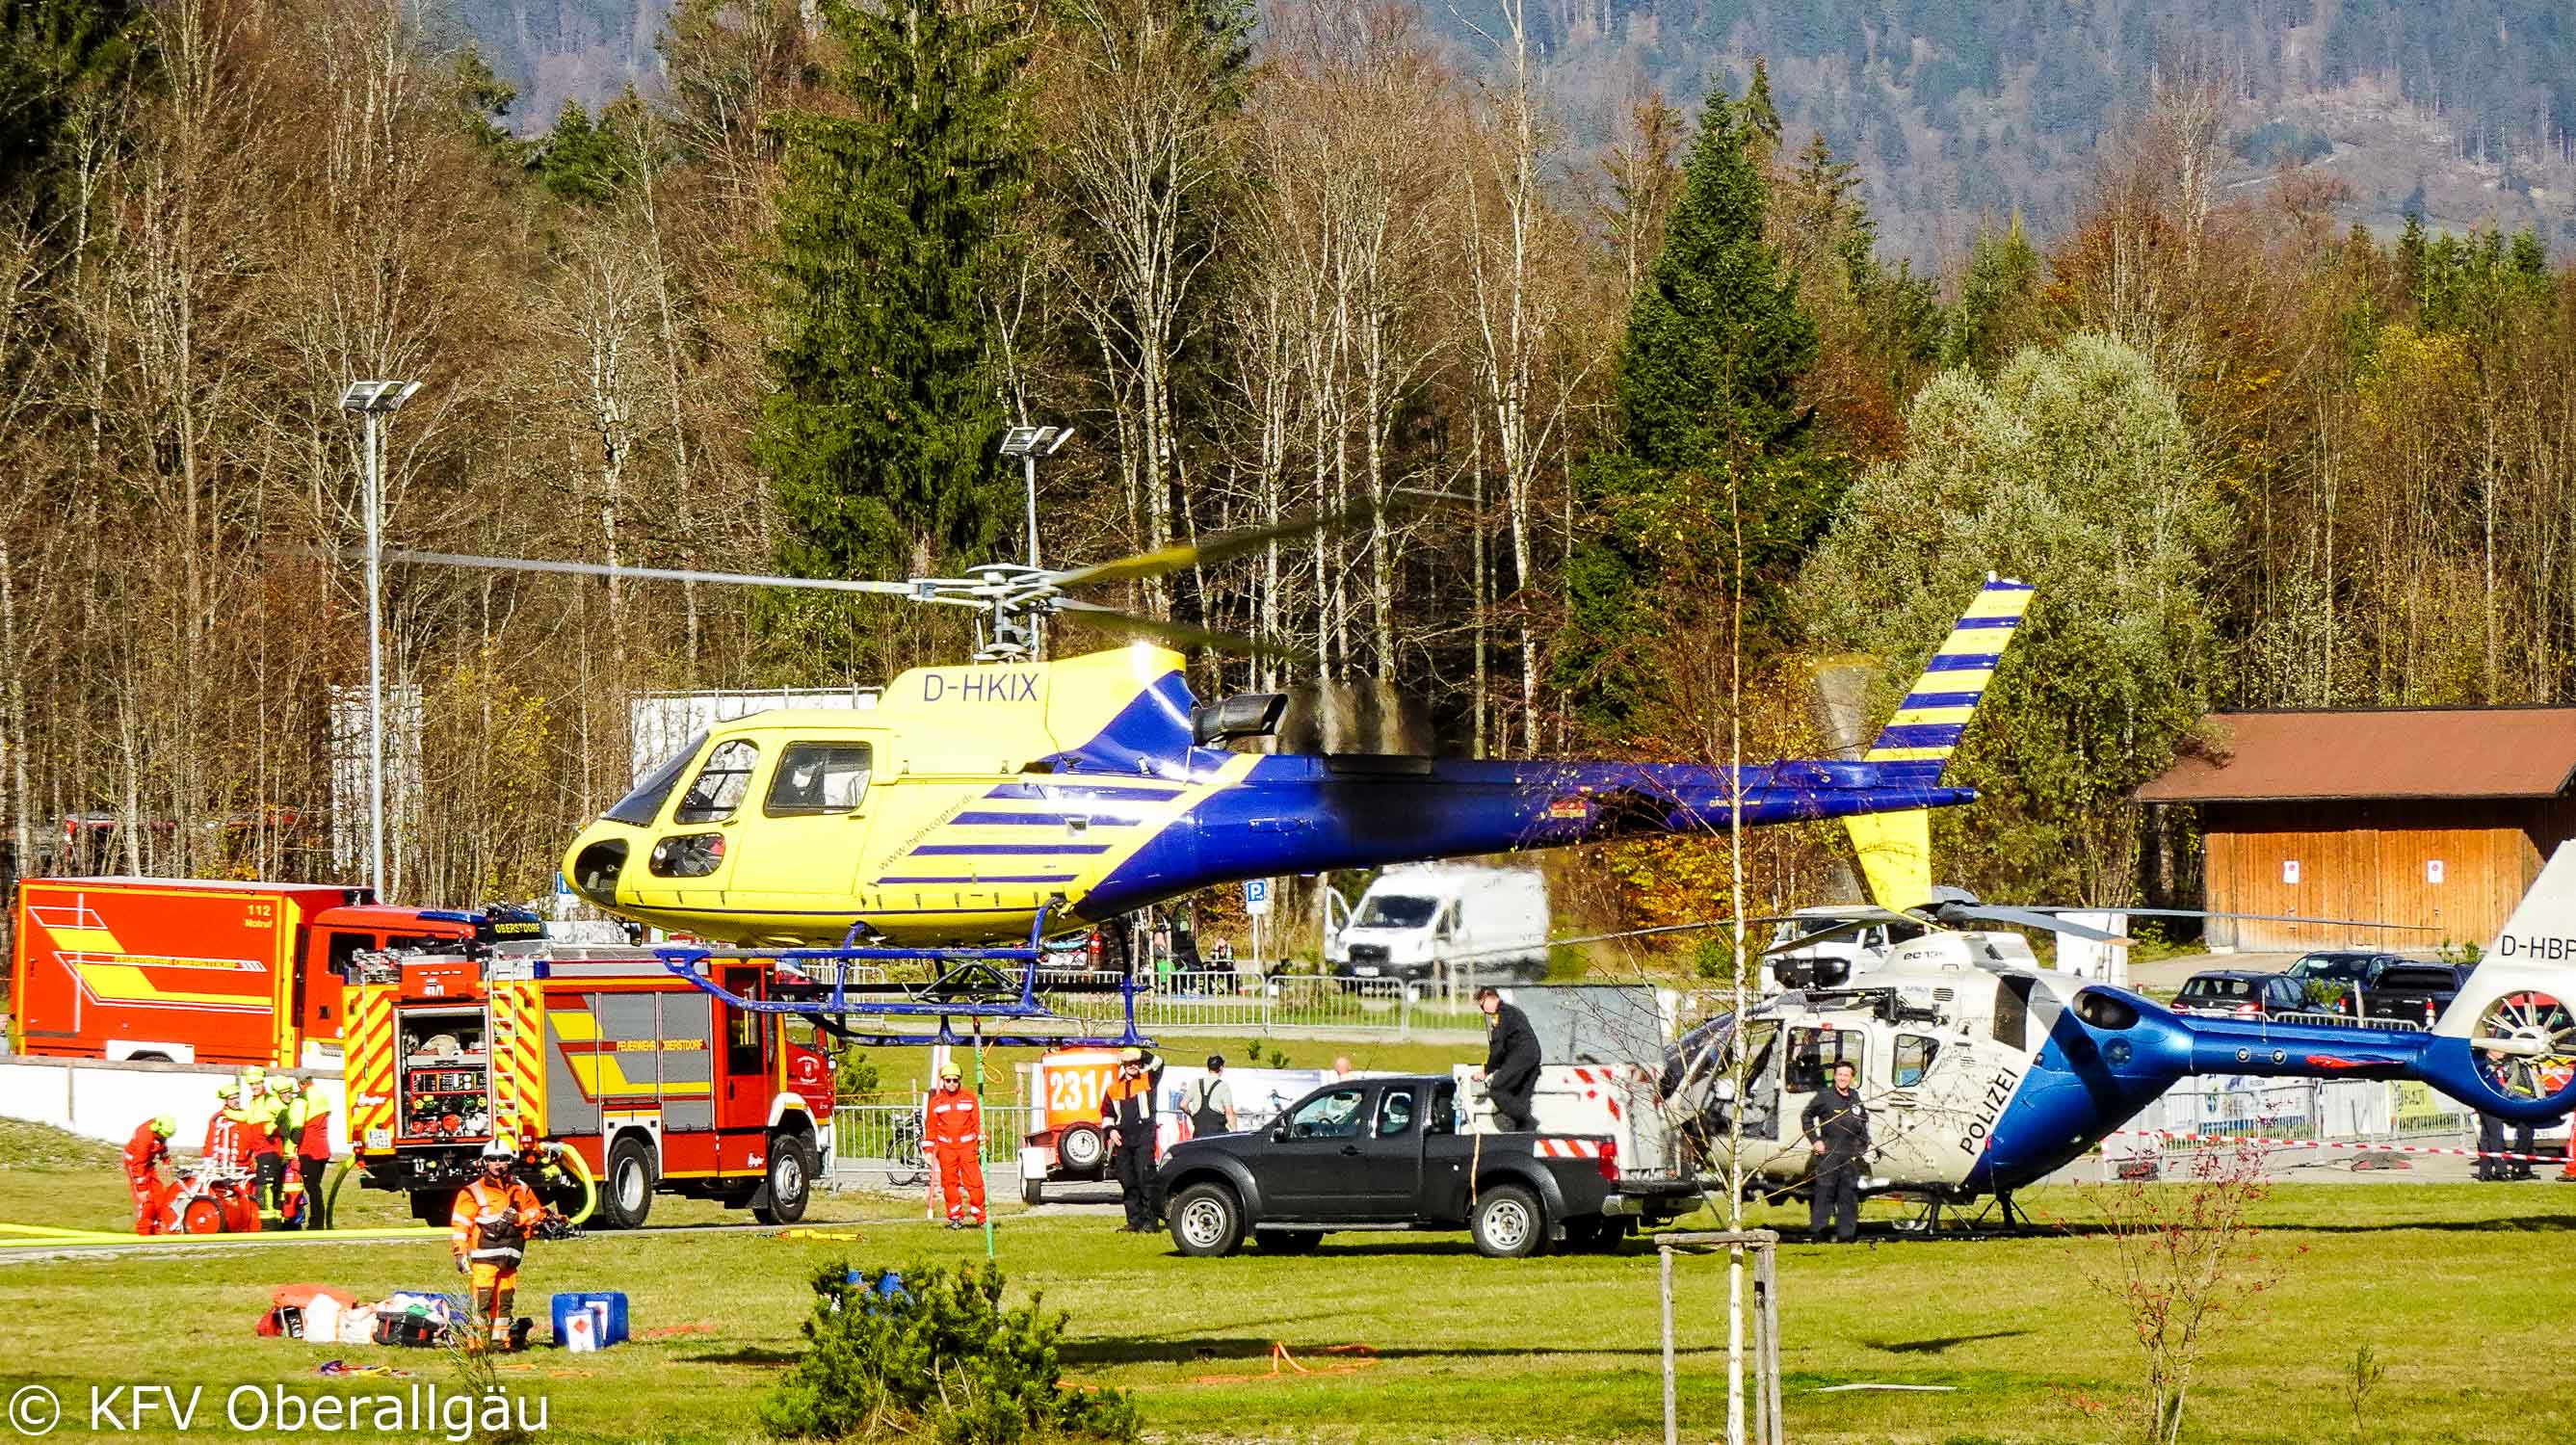 Landeplatz der Hubschrauber im Nordic Zentrum in Oberstdorf